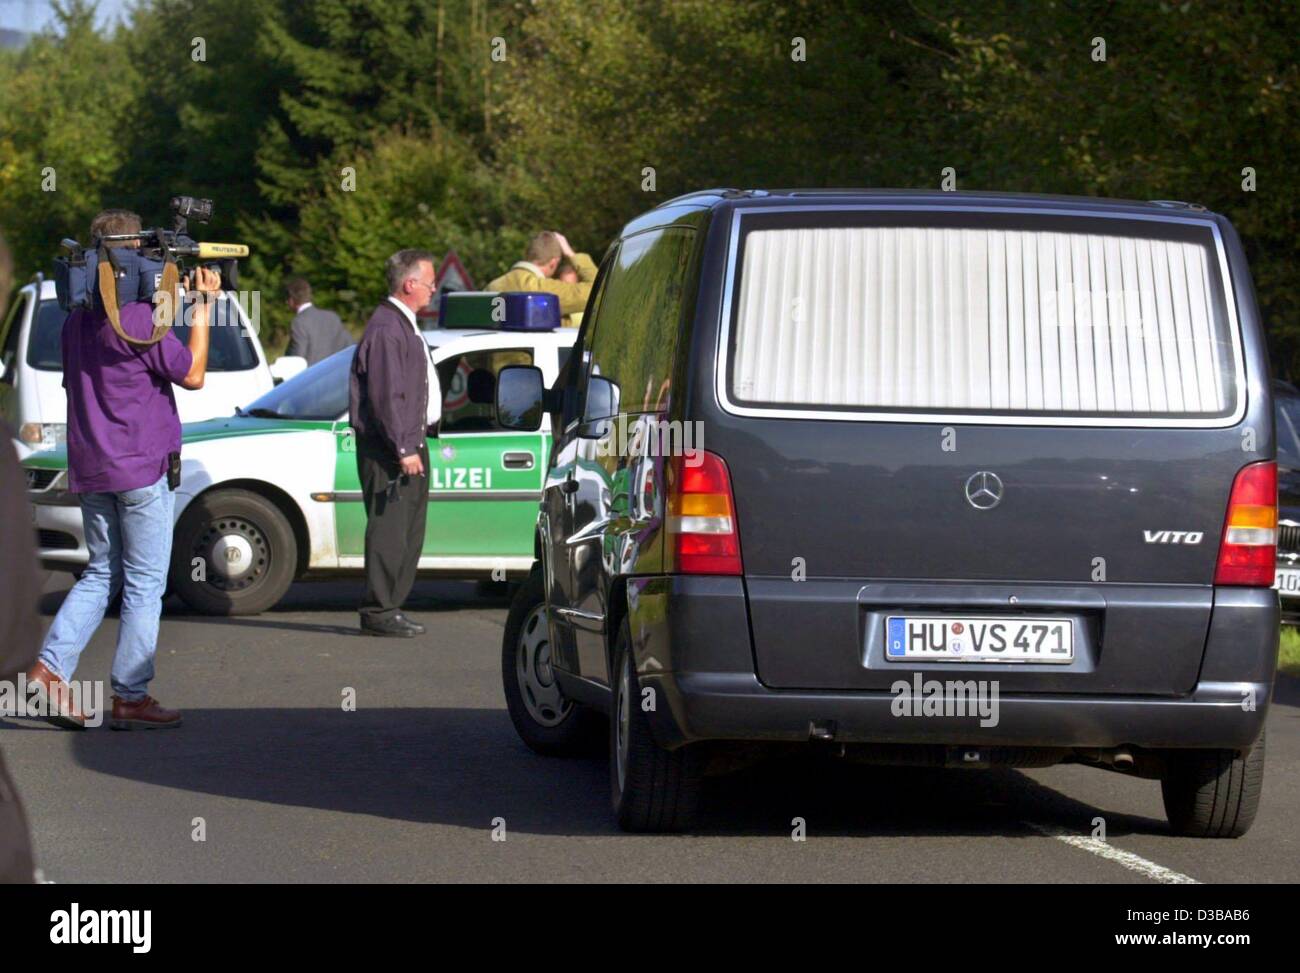 (Dpa) - Una carroza fúnebre se encuentra en una barricada de la policía, donde el límite máximo del cadáver secuestrado Jakob von Metzler, hijo de una prominente familia bancario, fue encontrado cerca de Rabenstein, cerca de Frankfurt, Alemania, el 1 de octubre de 2002. El niño de 11 años, fue secuestrado el 27 de septiembre en su camino a casa desde la escuela. Él w Foto de stock